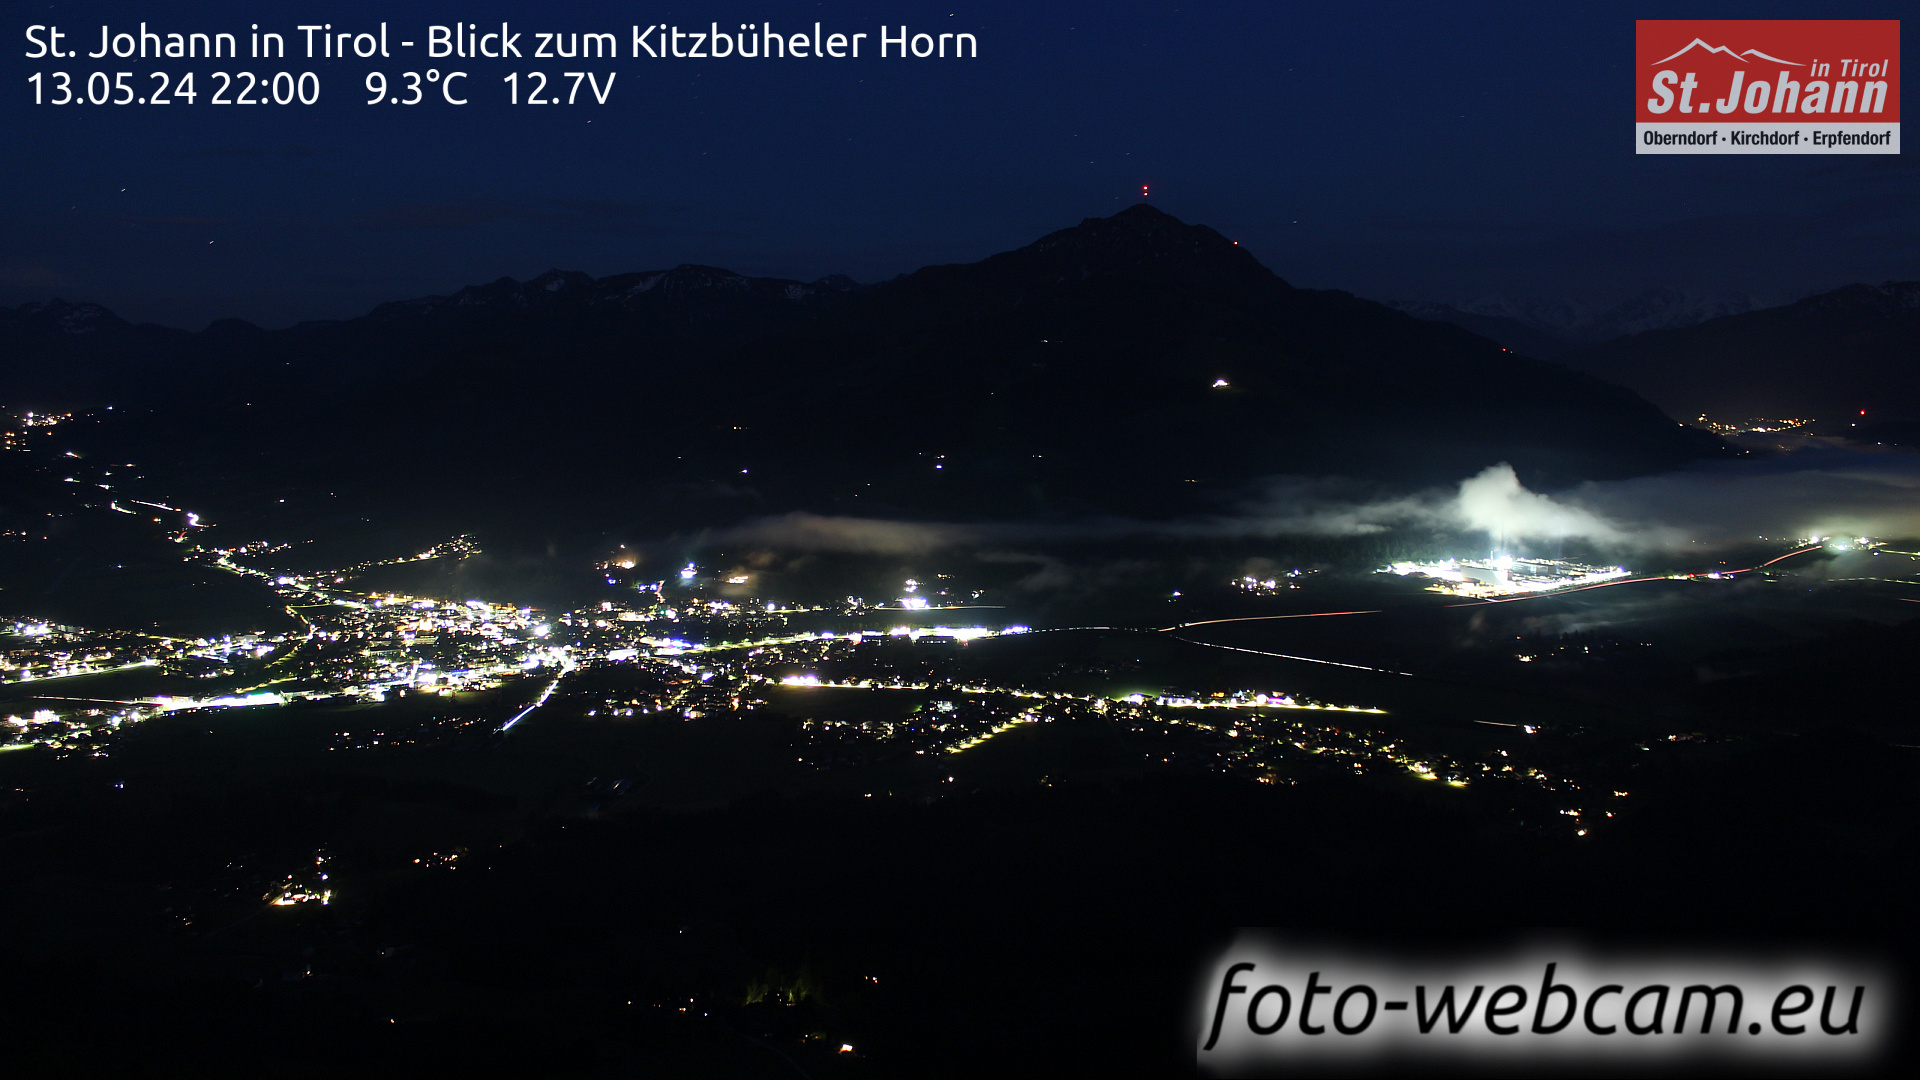 St. Johann in Tirol Tor. 22:07